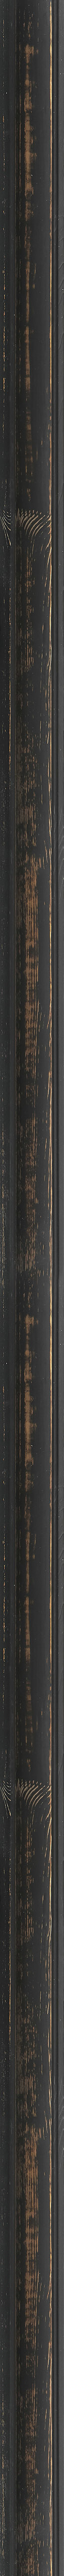 Μαύρη ντεκαπέ κορνίζα frame